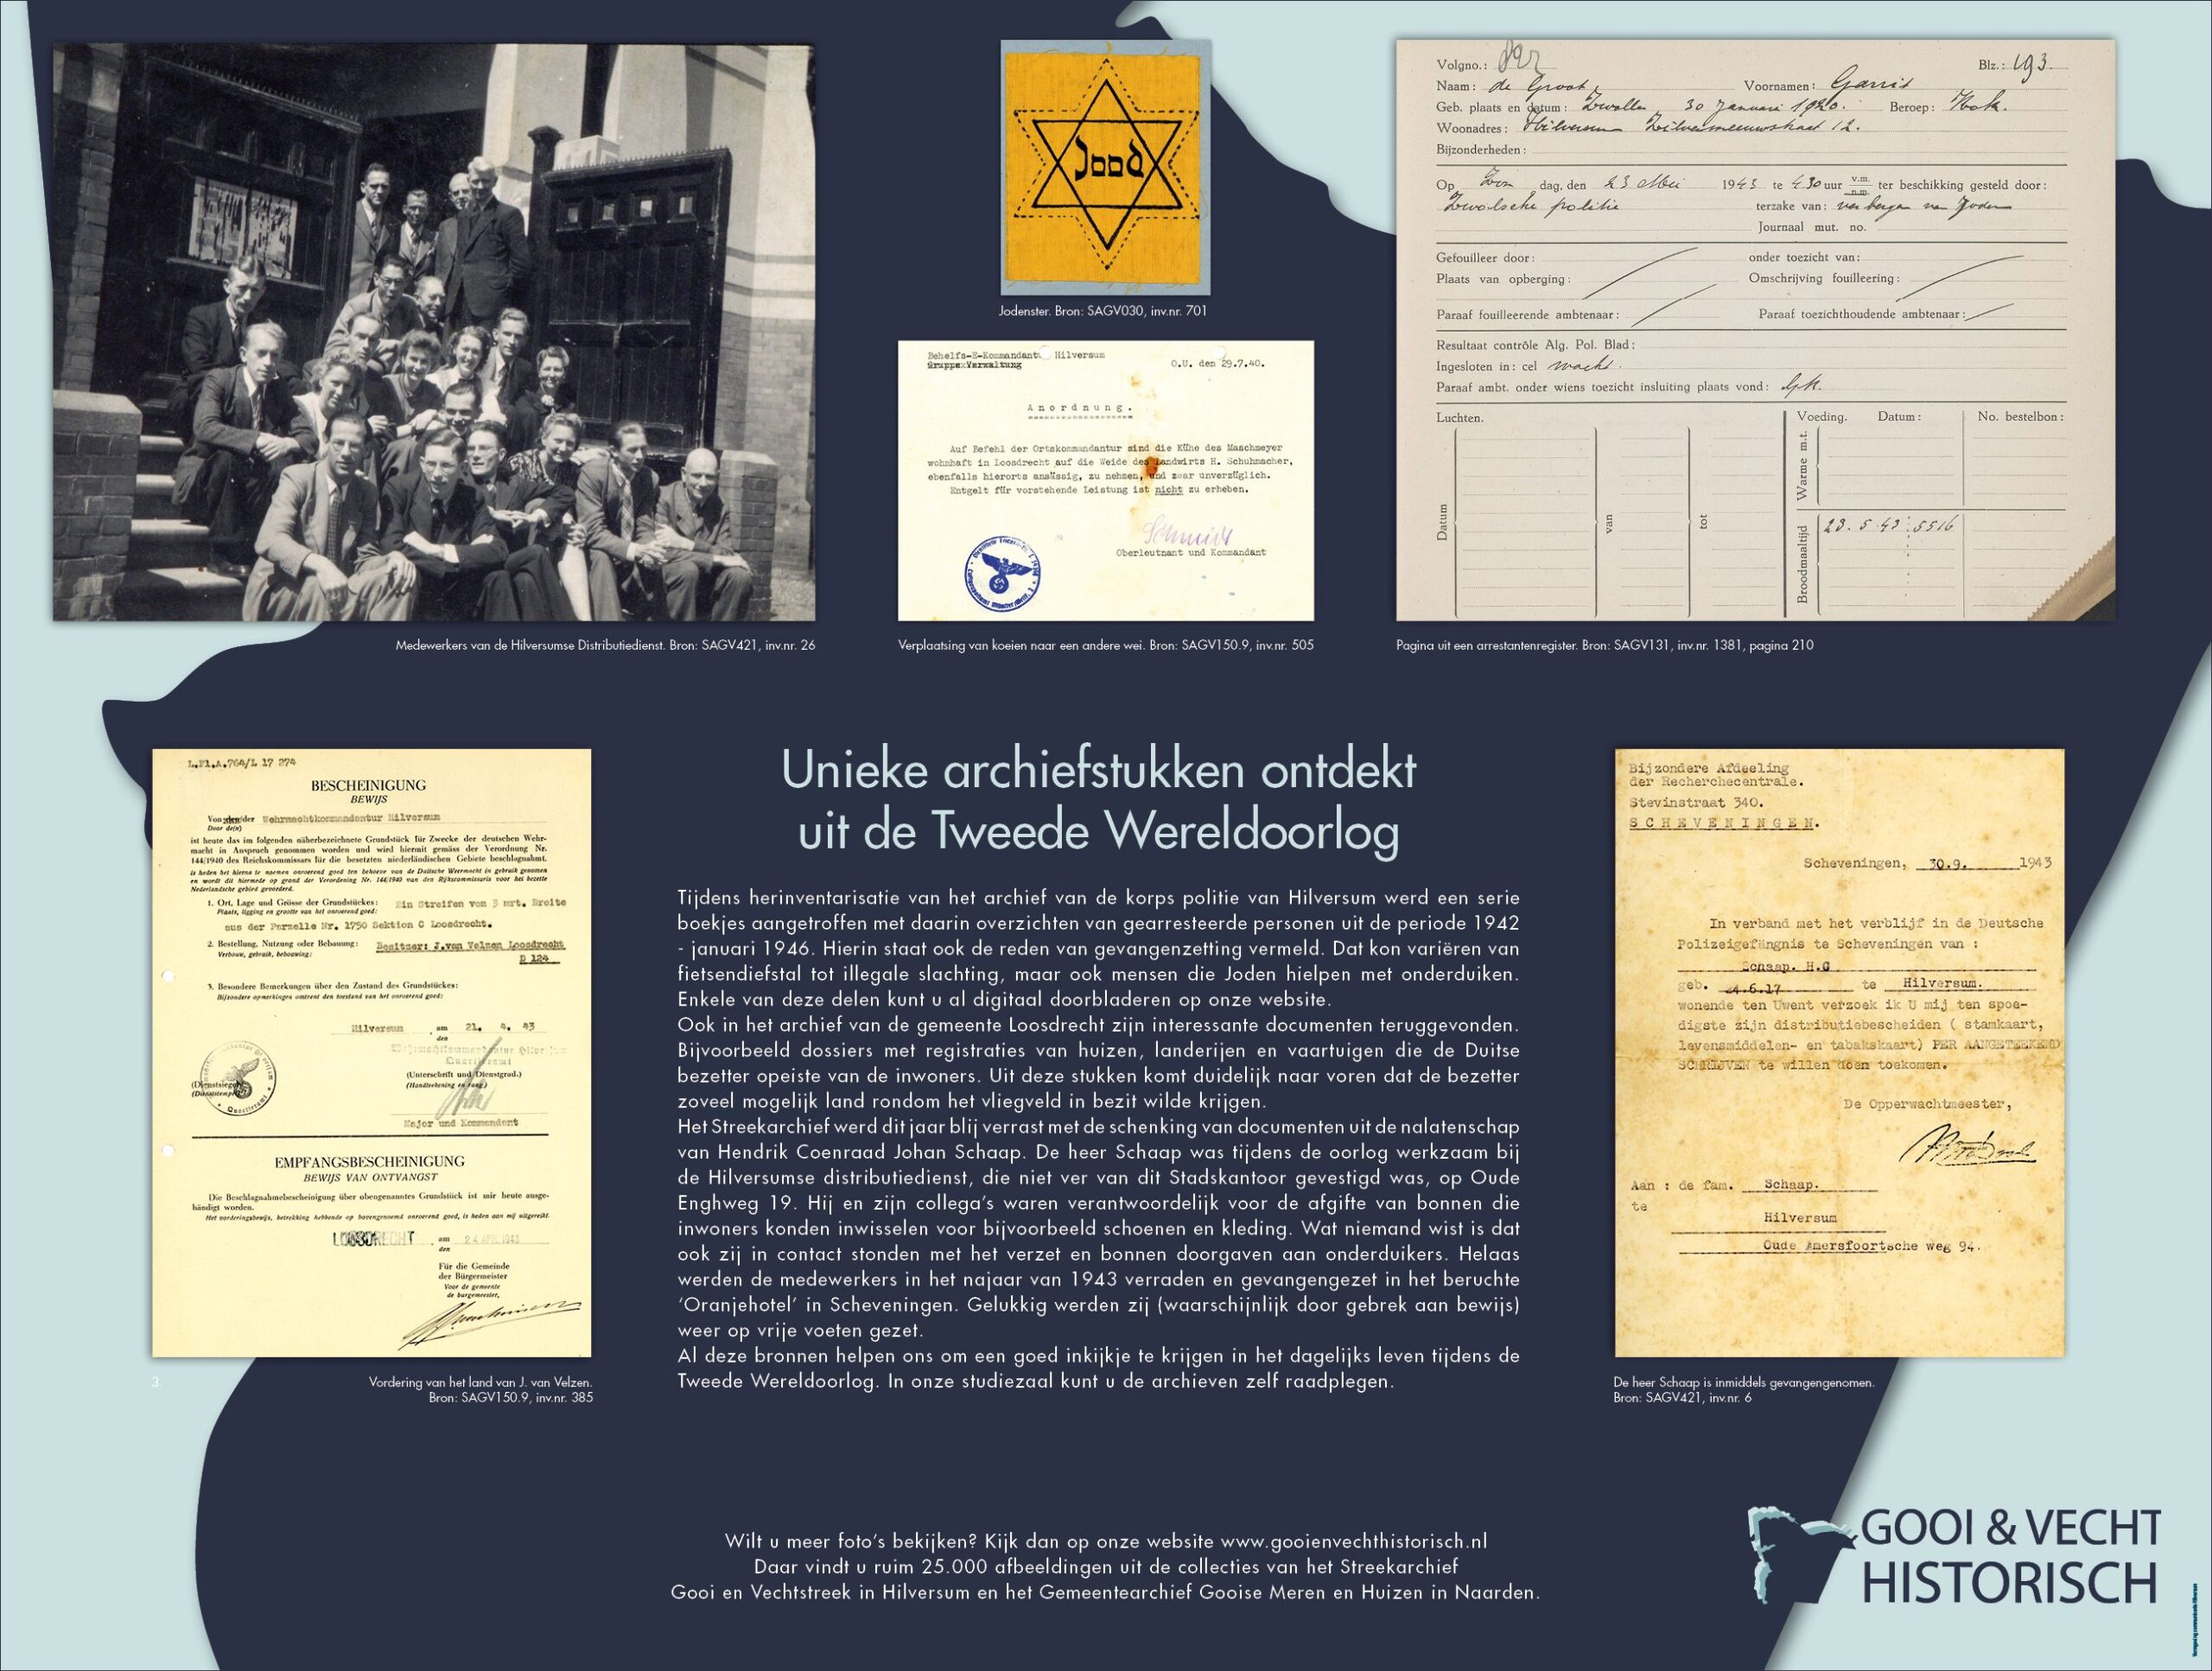 poster met voorbeelden van archiefstukken, waaronder een jodenster en info over de registratie van gearresteerde personen in de Tweede Wereldoorlog